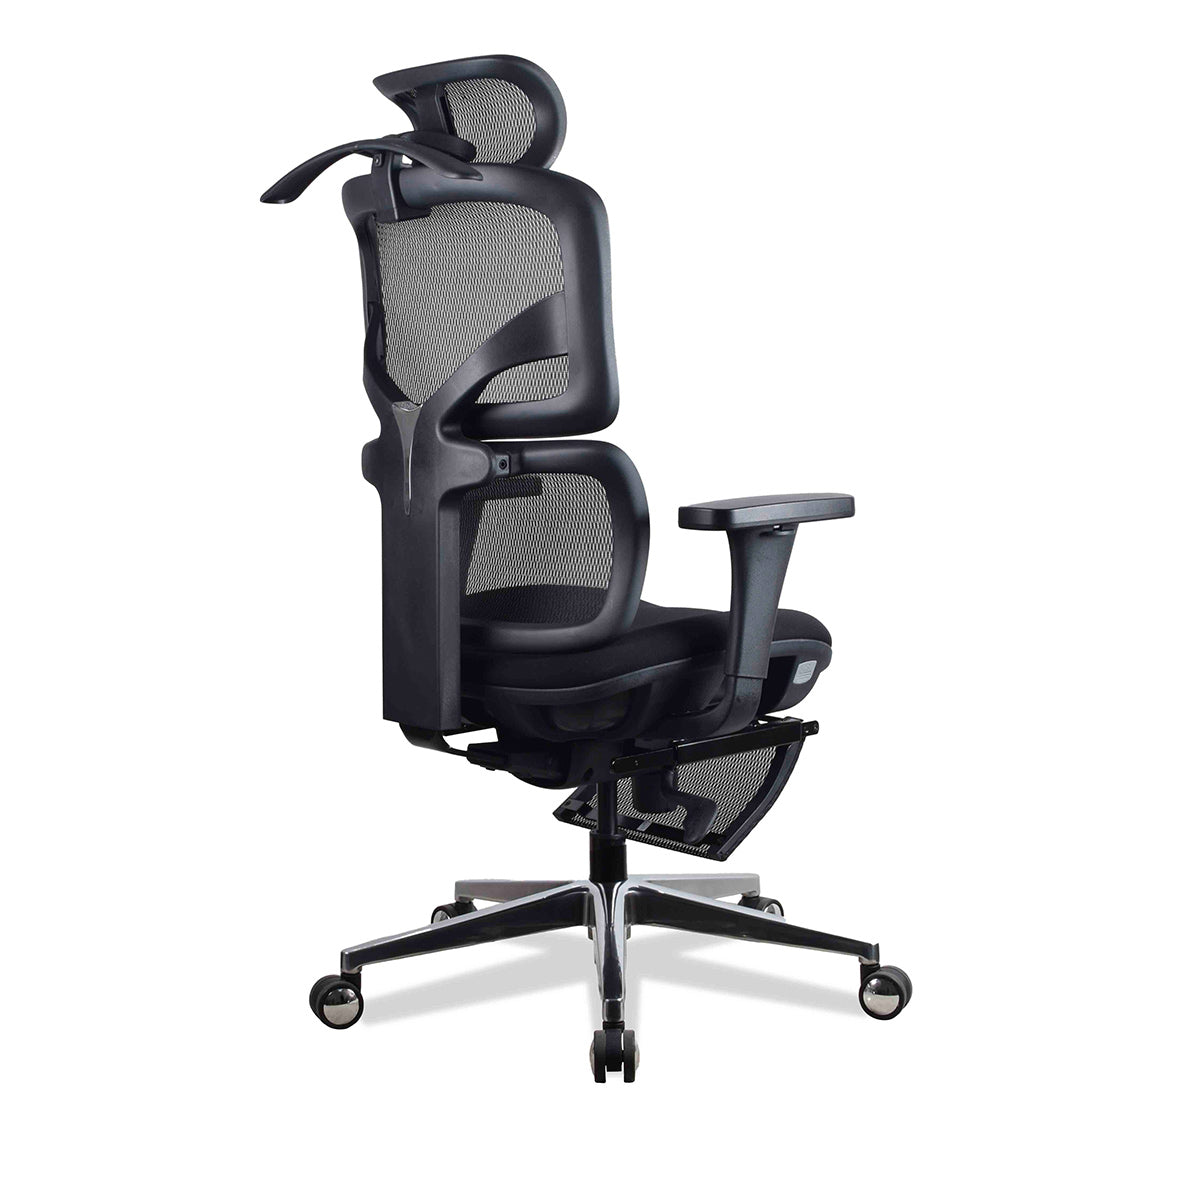 Chaise de bureau haute ergonomique Se7en LX002